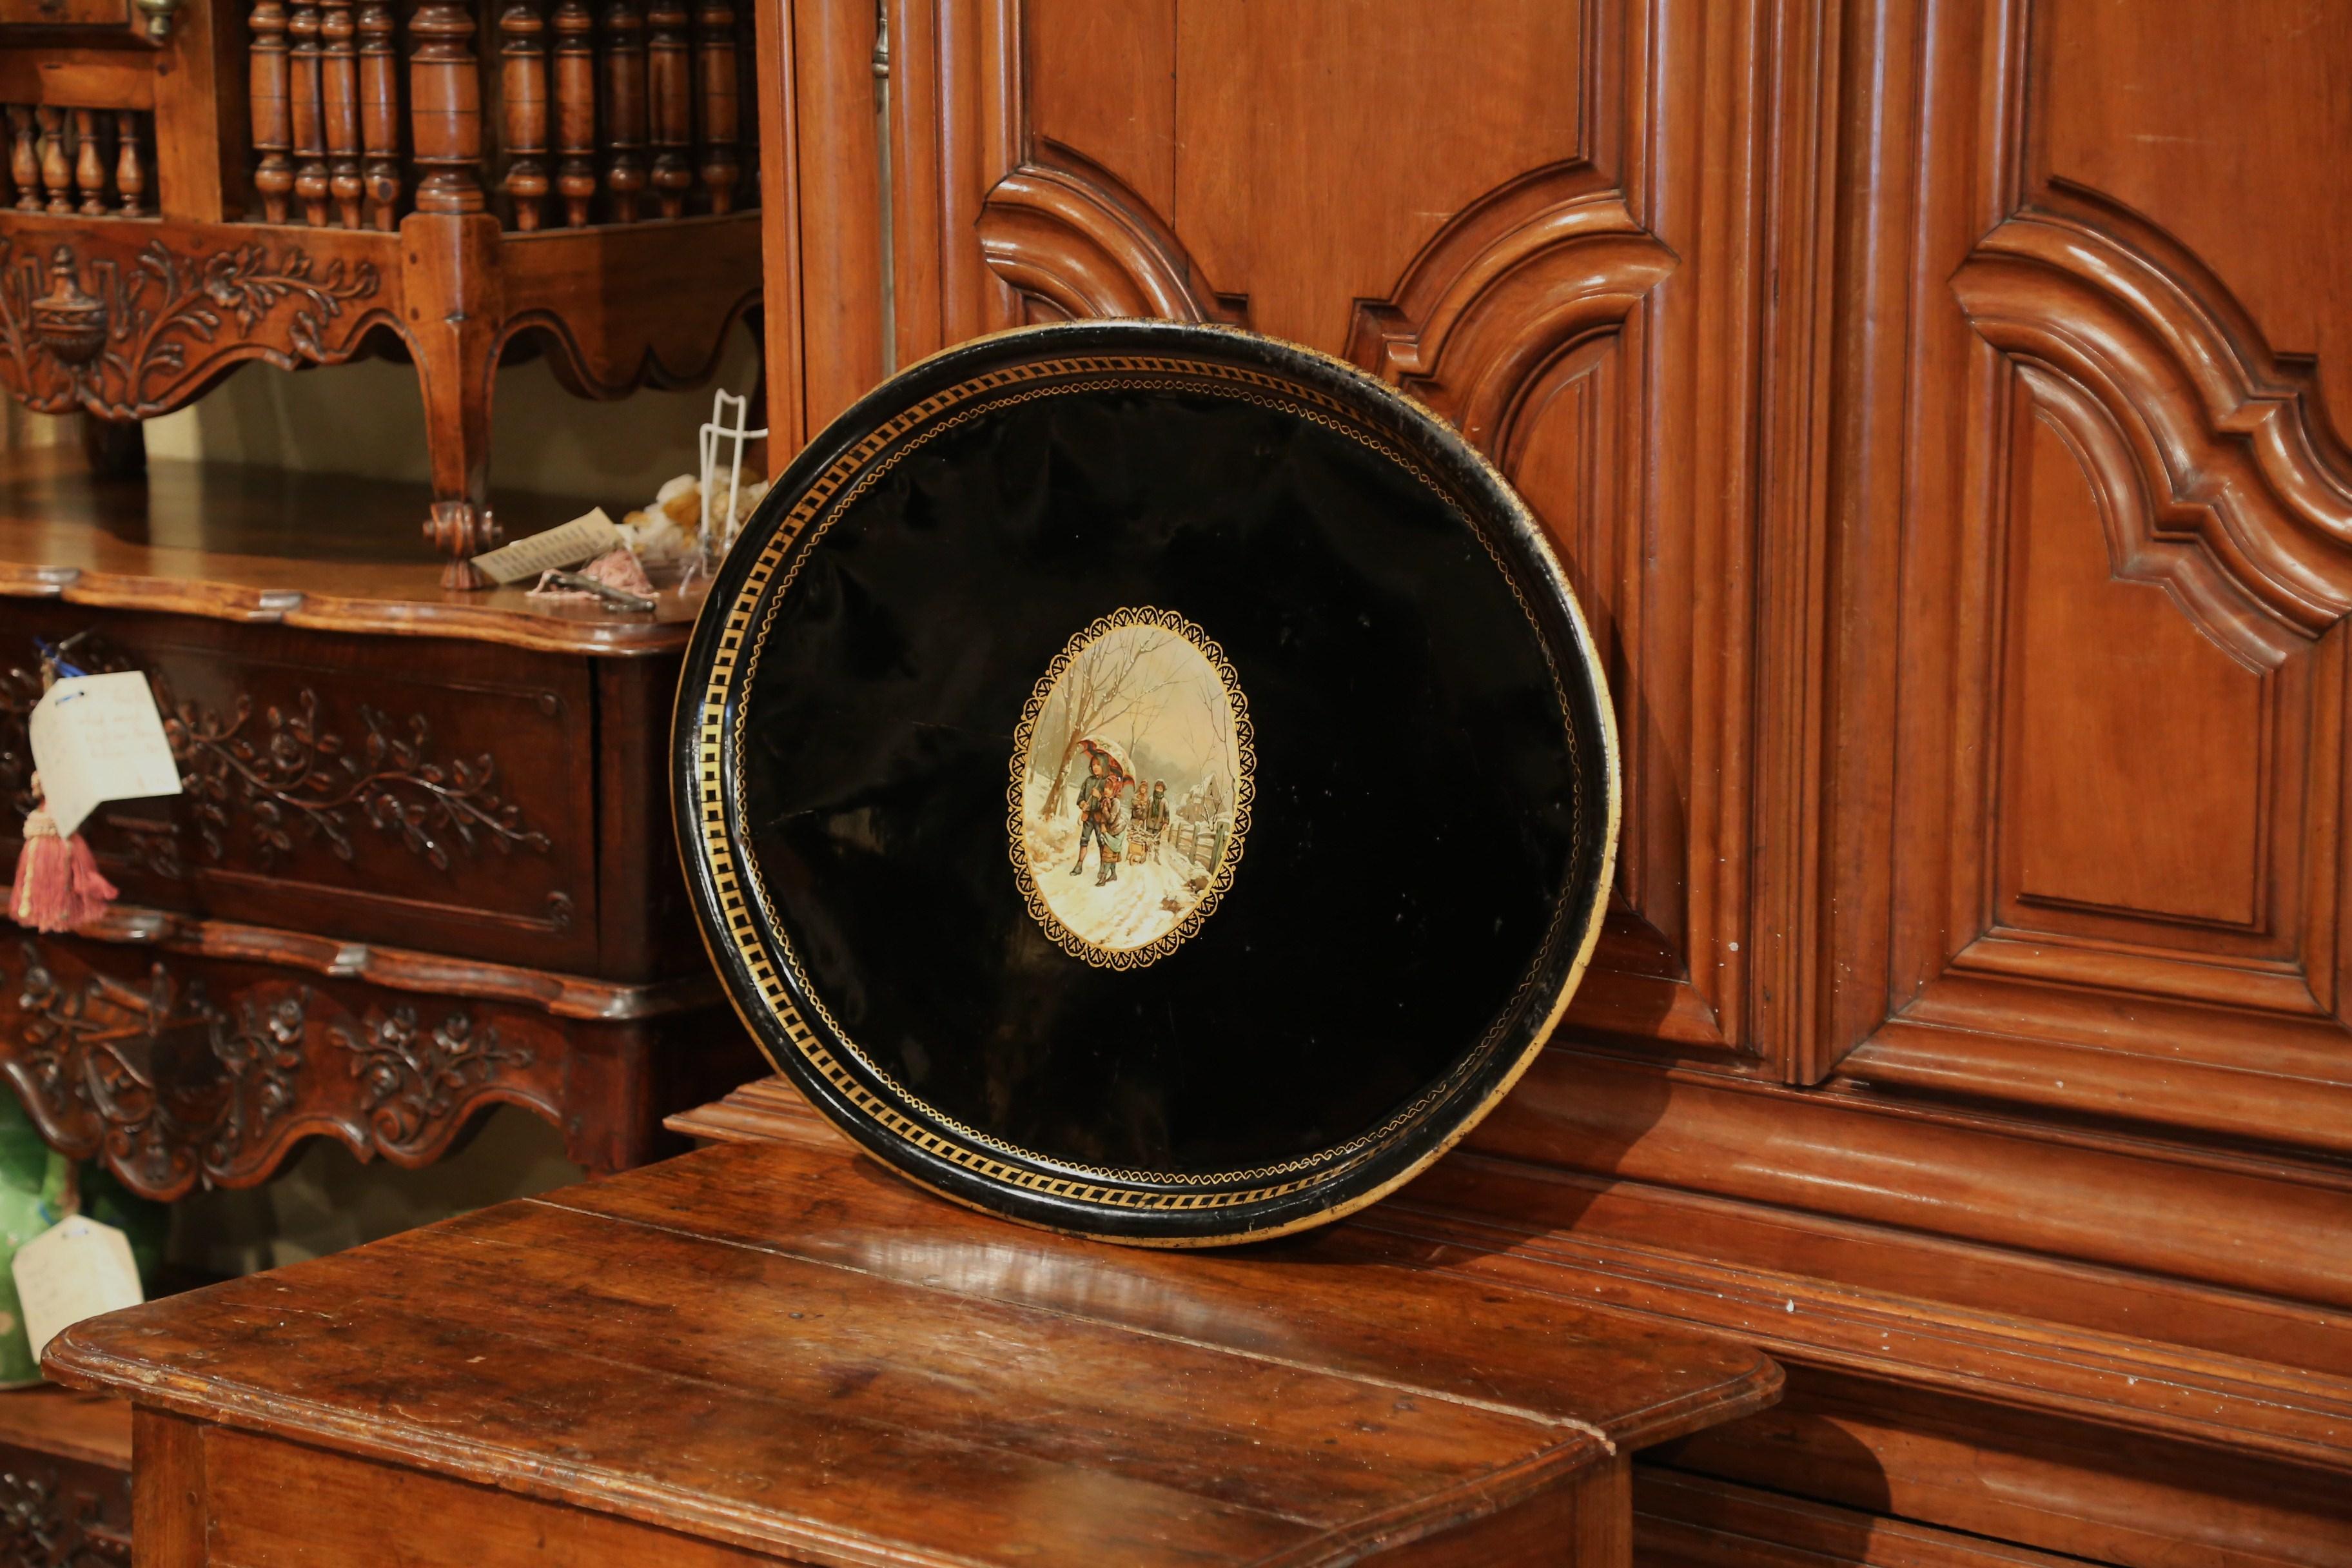 Elegantes antikes Tablett aus Frankreich, um 1870; oval in der Form, ist die große schwarze Tole-Platte durch handgemalten vergoldeten Dekor um die Lippe und eine bunte Winterlandschaft in der Mitte verziert. Die farbenfrohe Szene zeigt junge